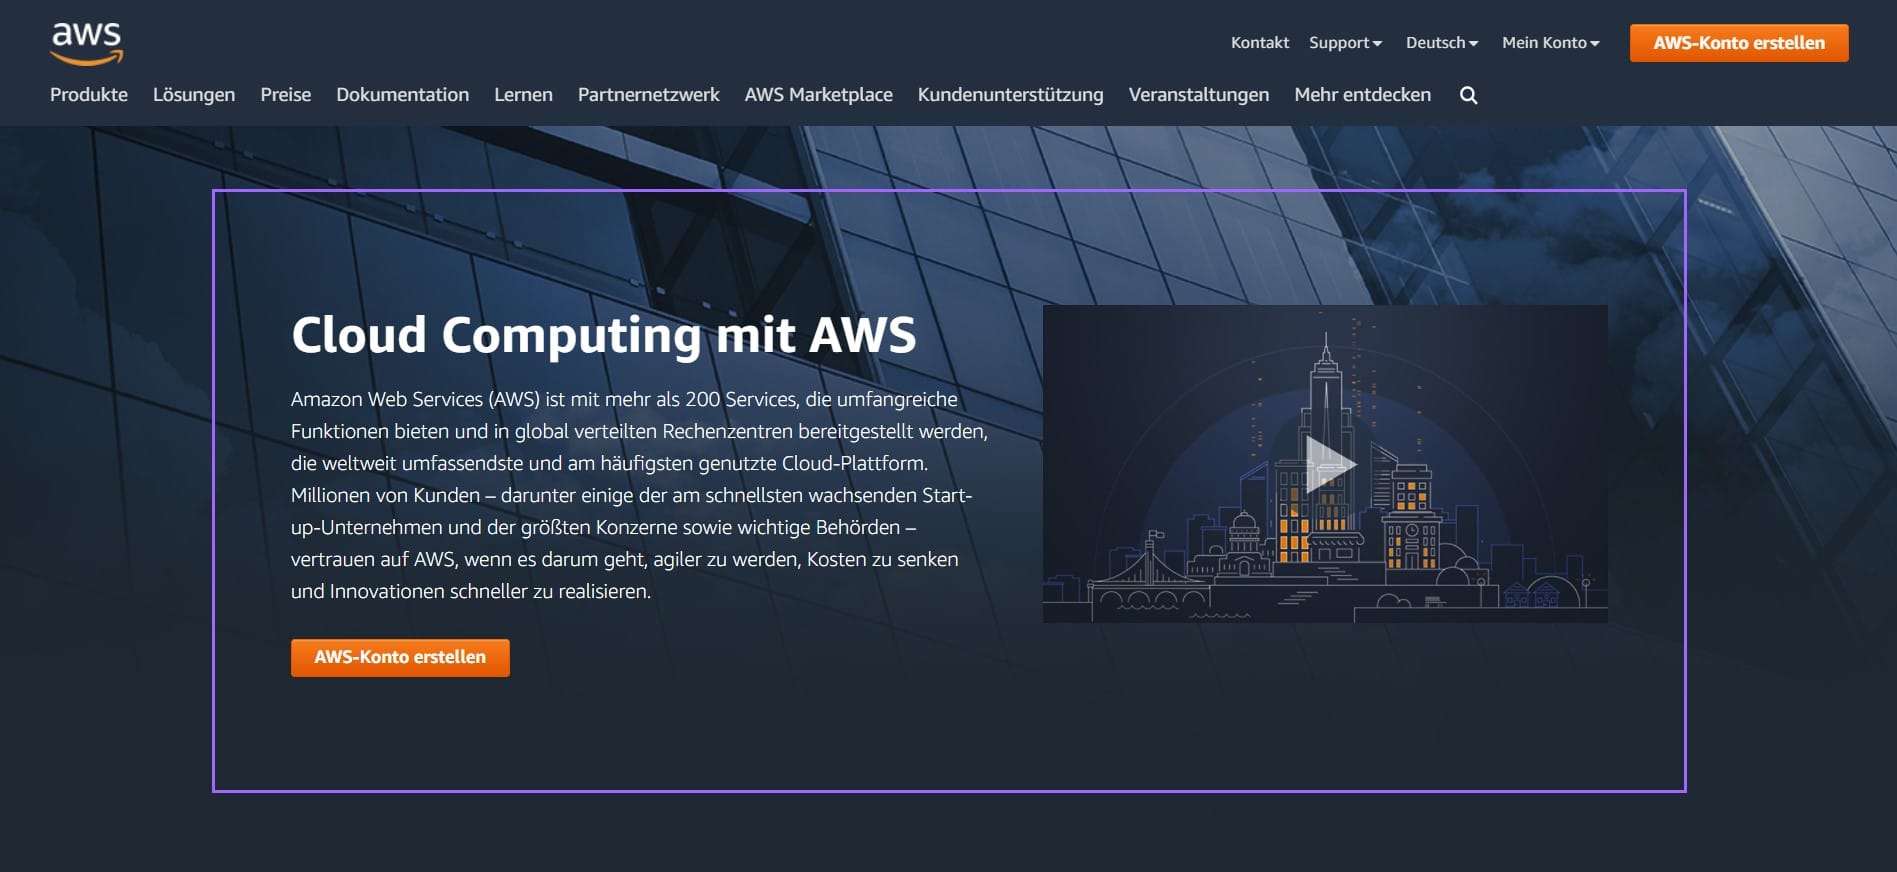 Cloud Computing mit AWS